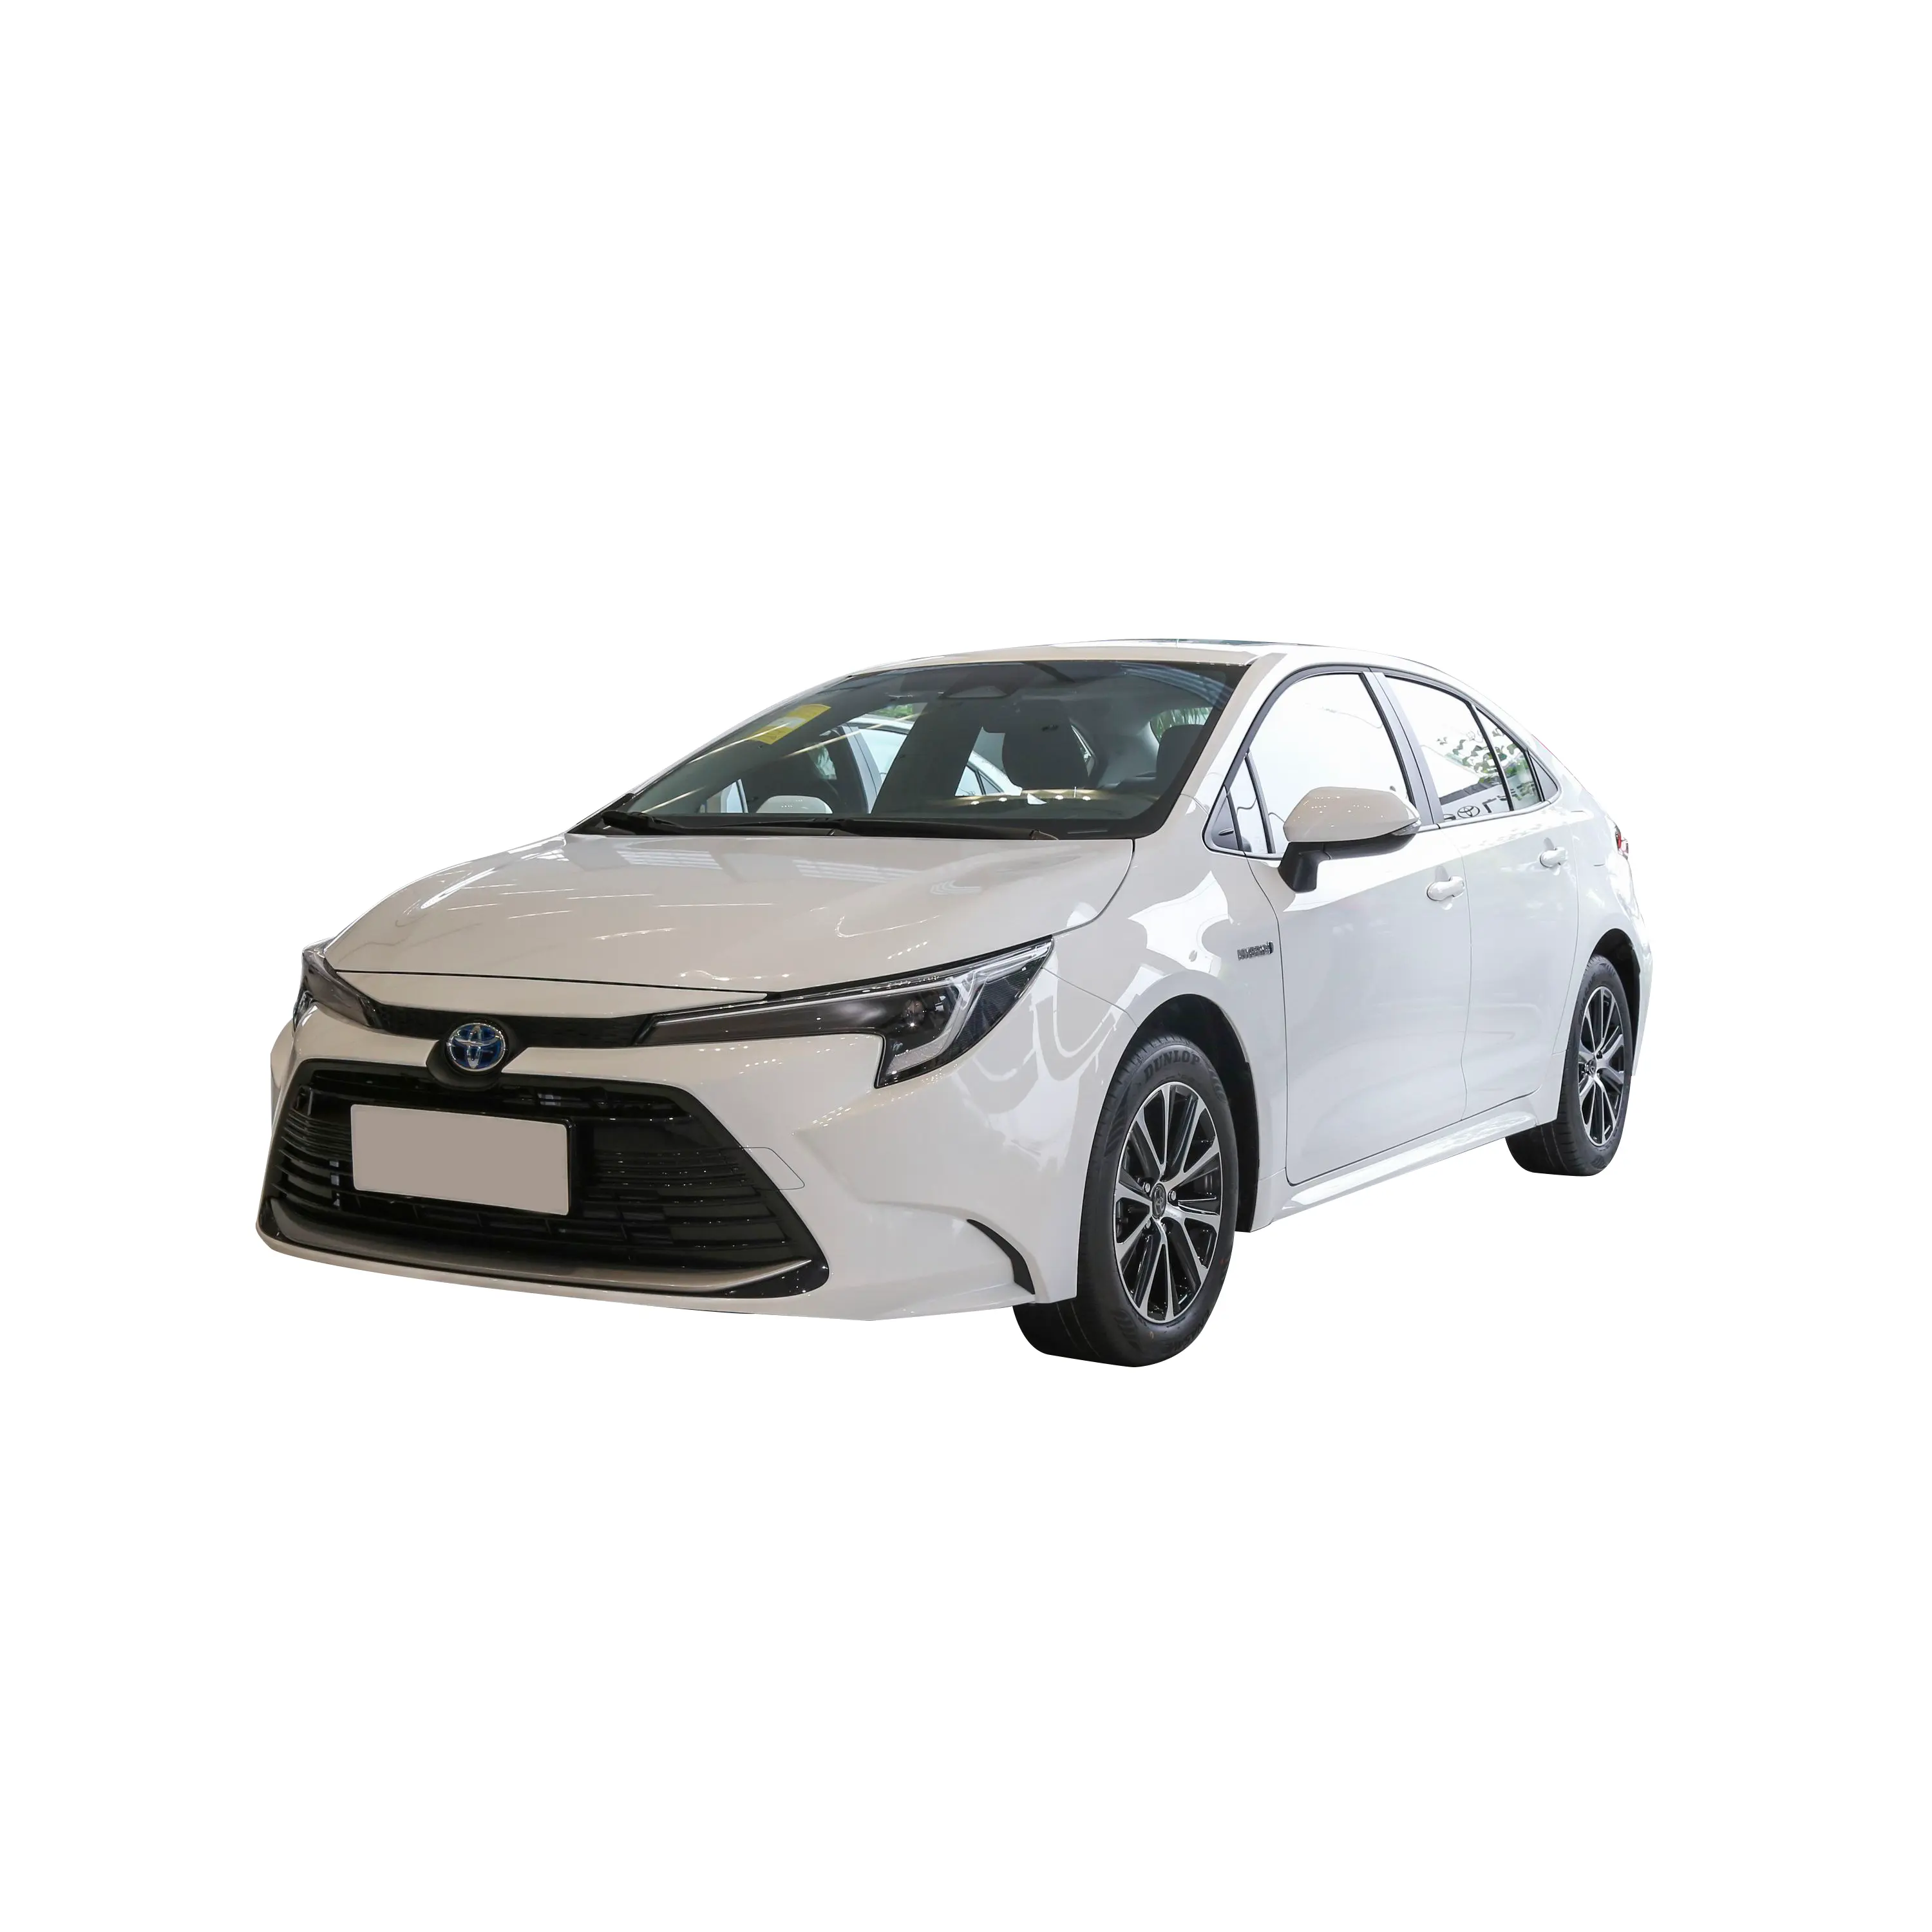 Sıcak satış yüksek performanslı arabalar kullanılan araçlar ucuz Toyota Toyota için satılık ikinci el araba Toyota ihracat